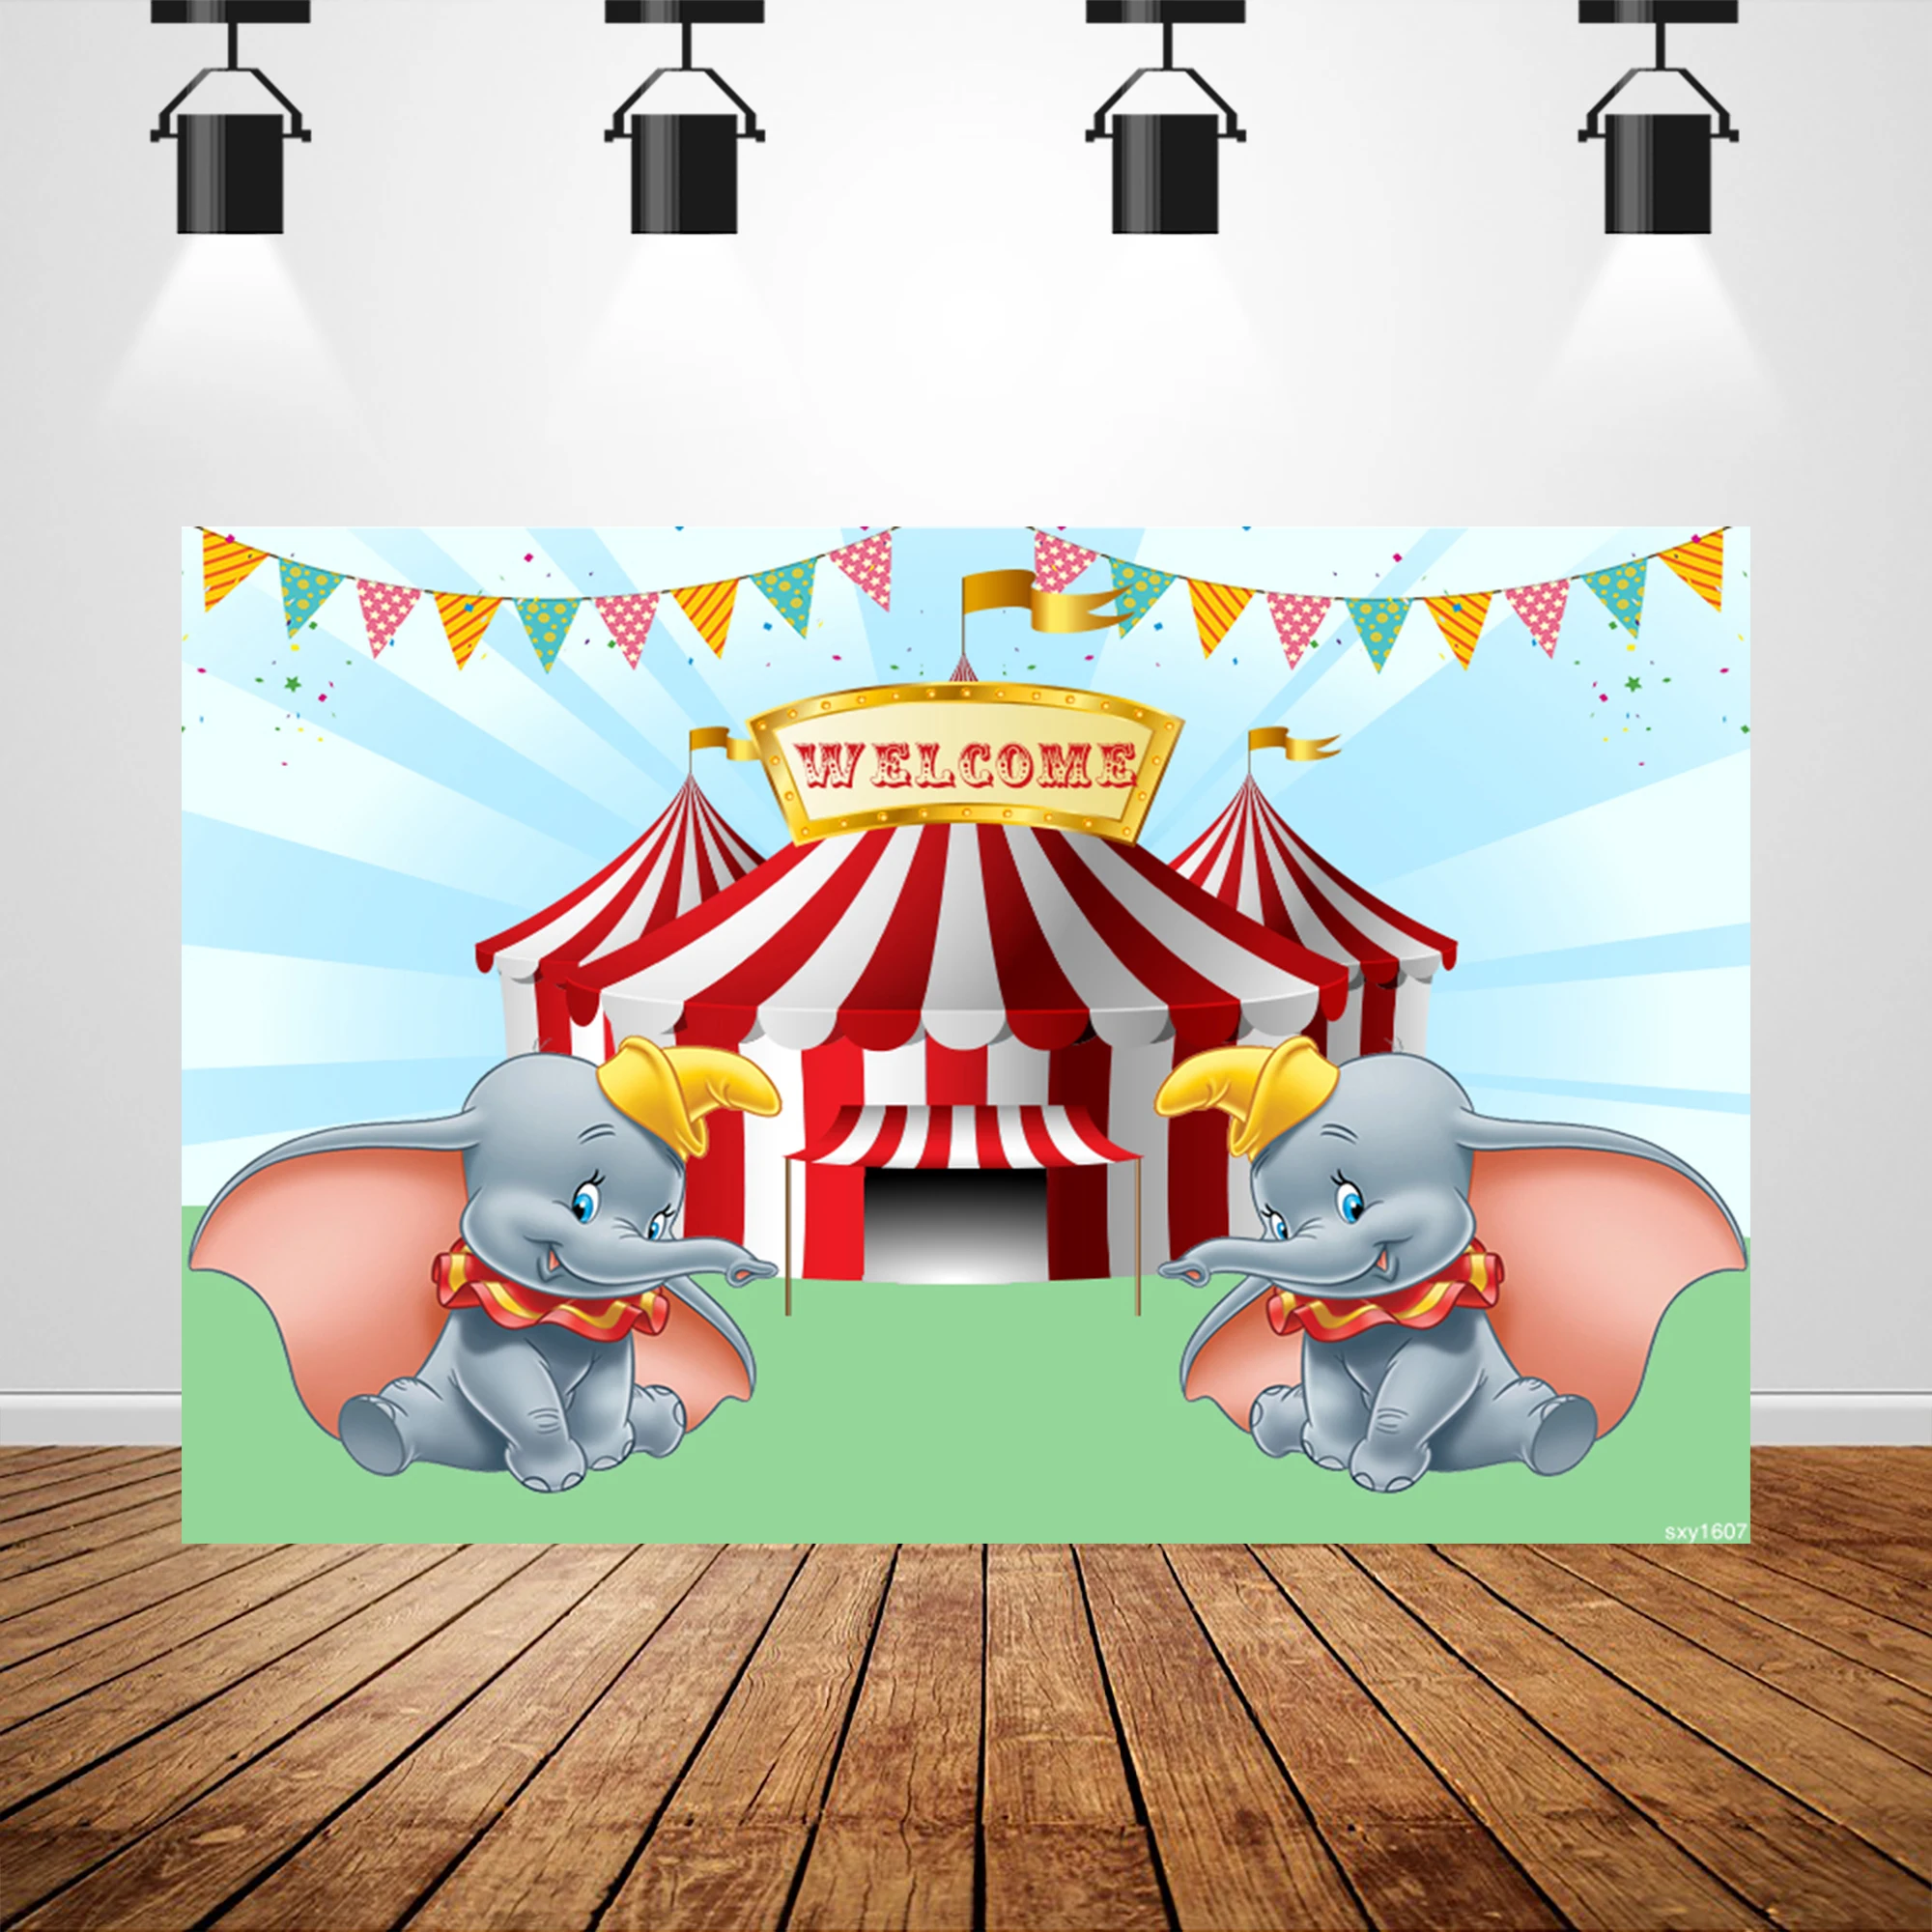 Sxy1607 флаг фотобудка украшения дома цирк Дамбо фоны Дети День Рождения фотография фон для фотостудии 7x5ft